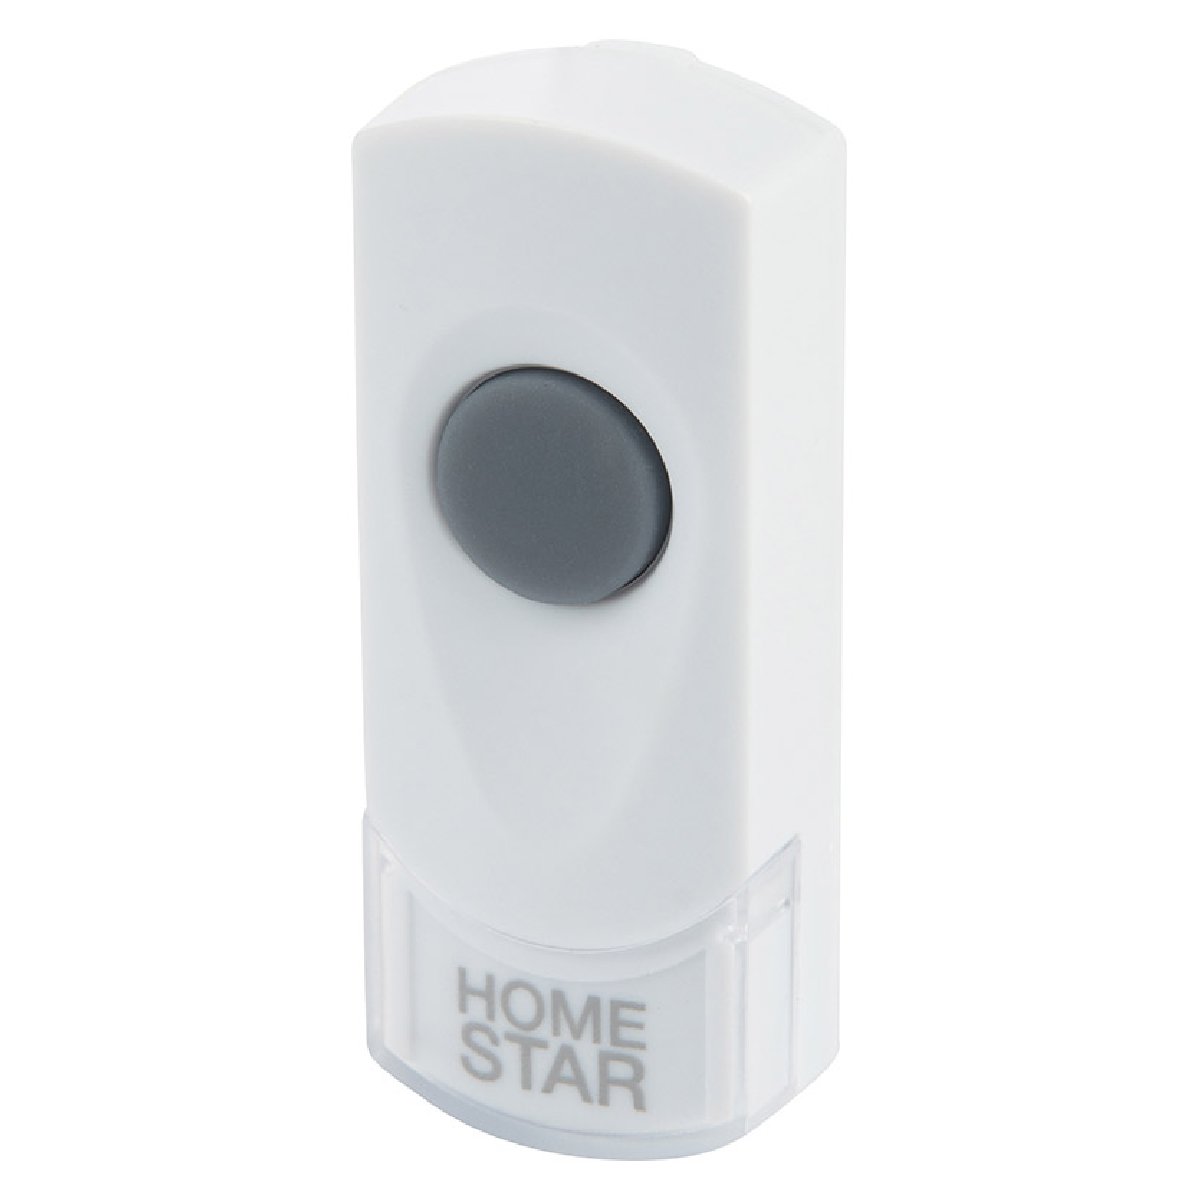 Звонок электрический HomeStar HS-0107WP беспроводной (103612)